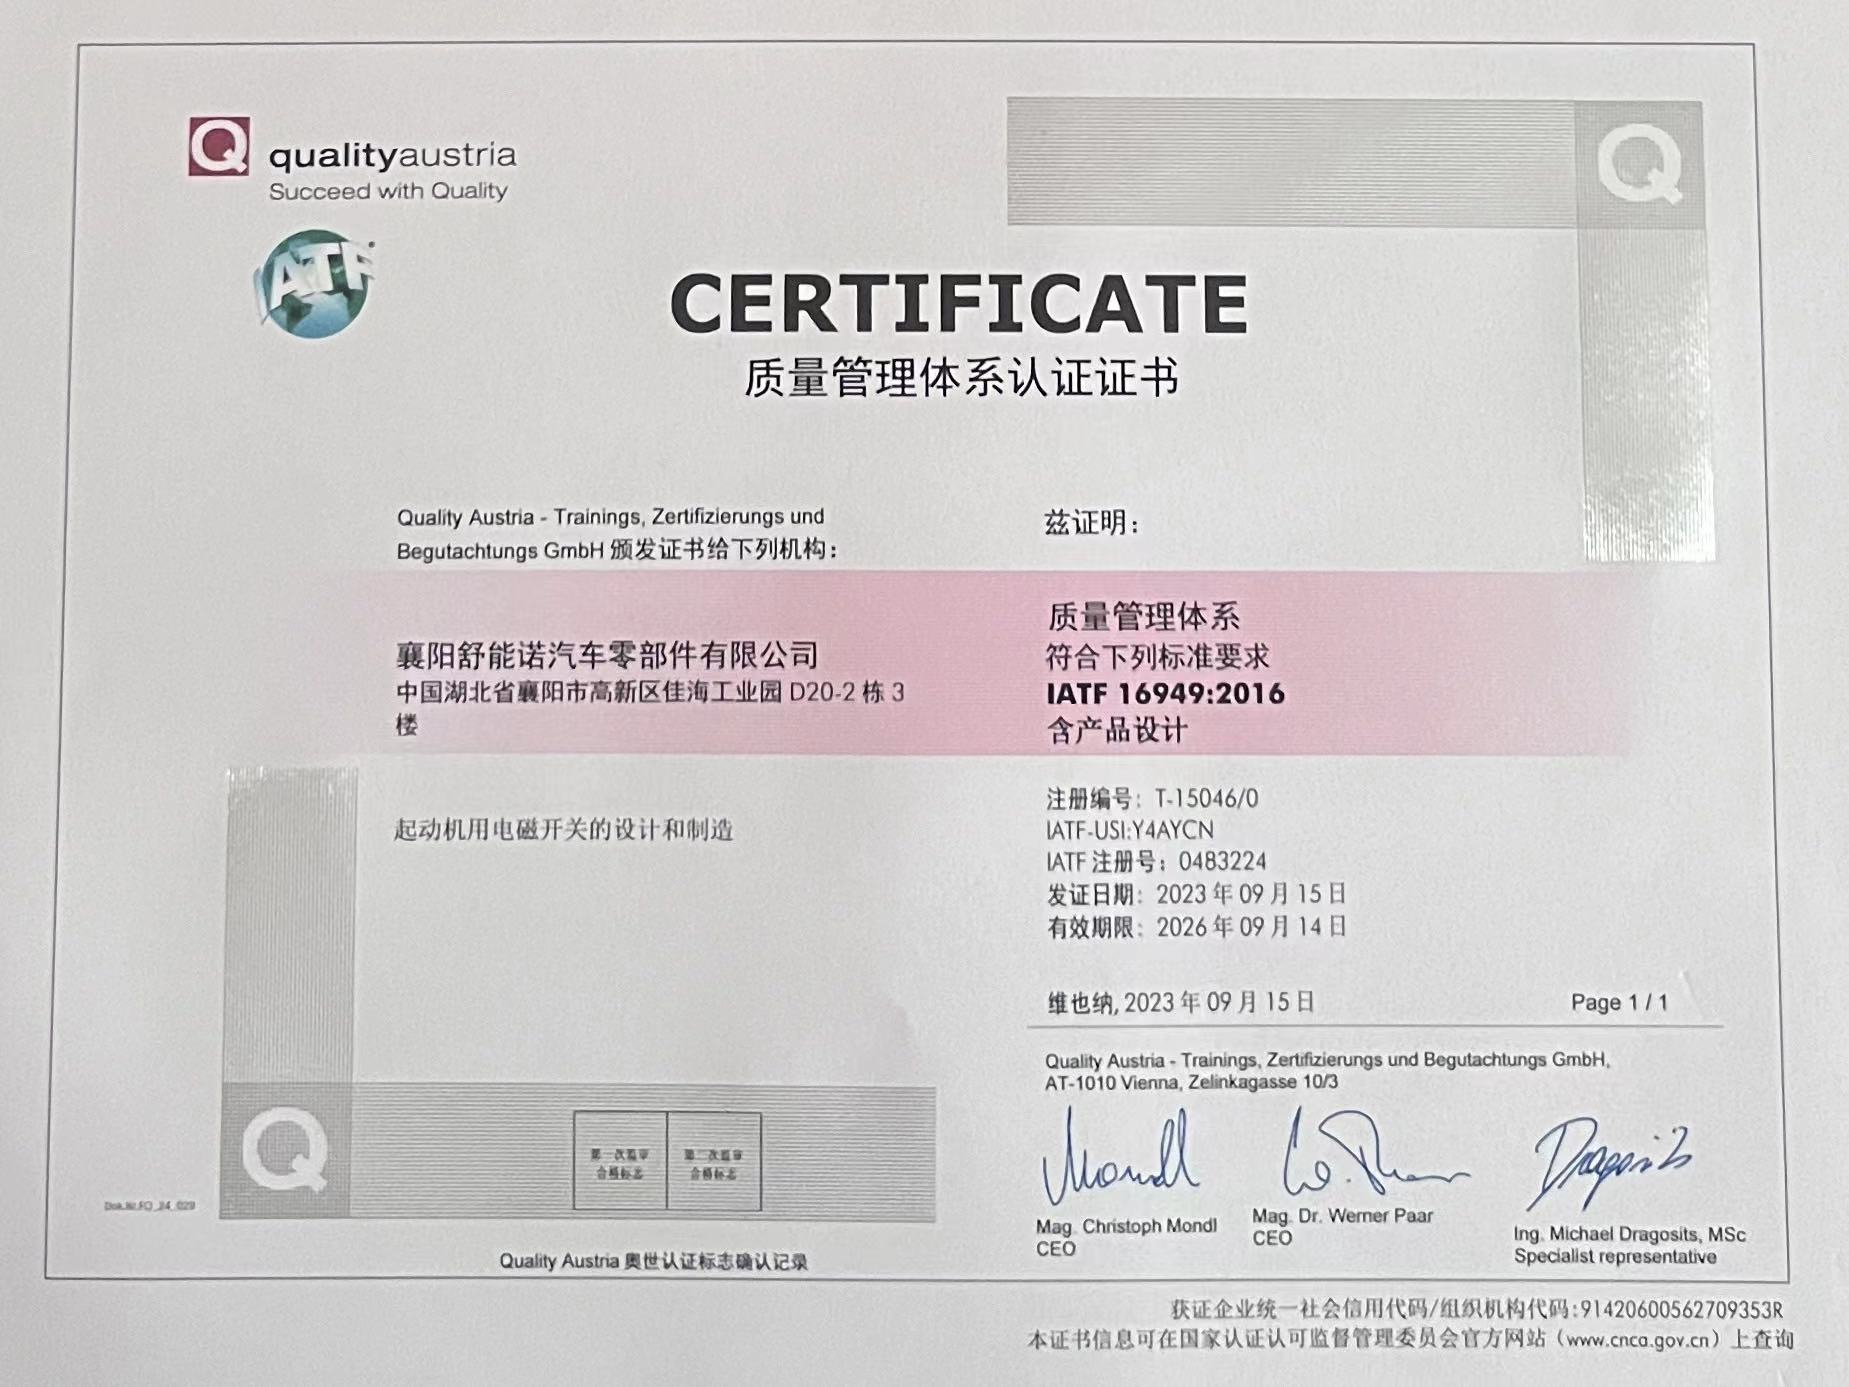 襄阳舒能诺公司通过ISO质量管理体系认证